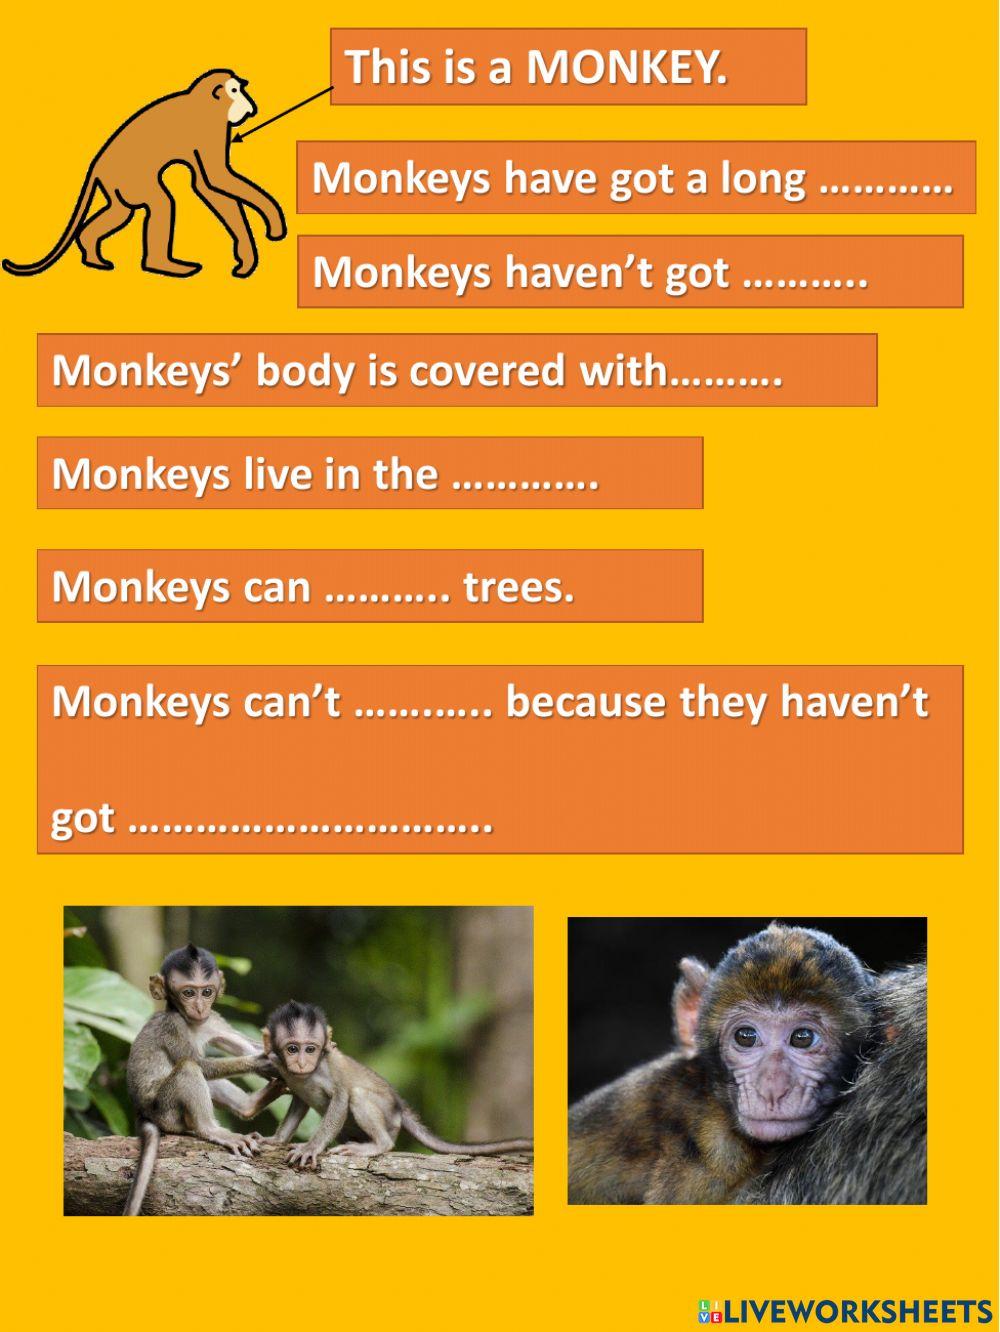 Monkeys life